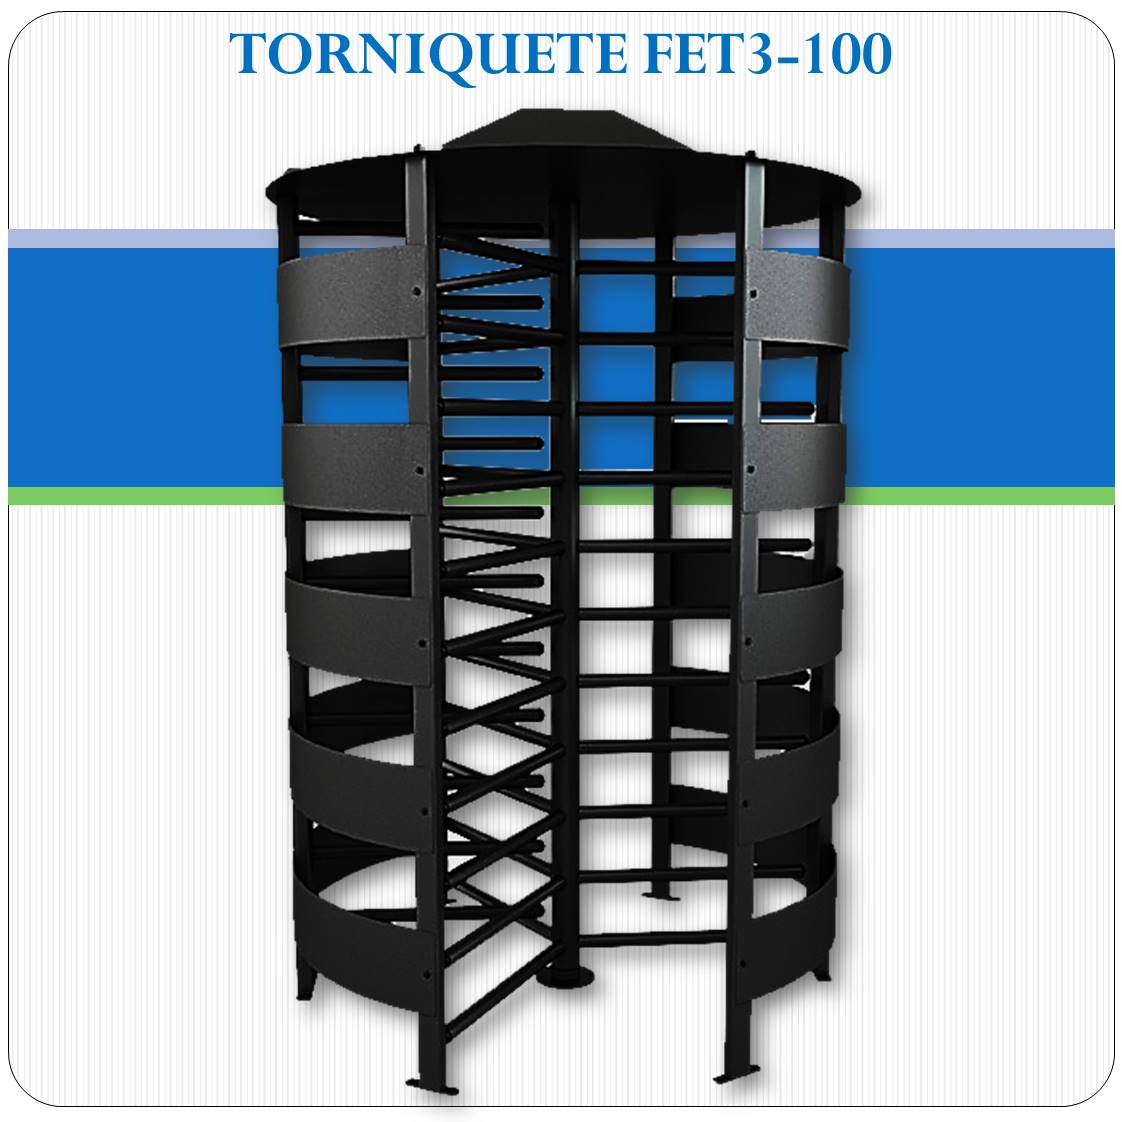 Torniquete FET3-100 